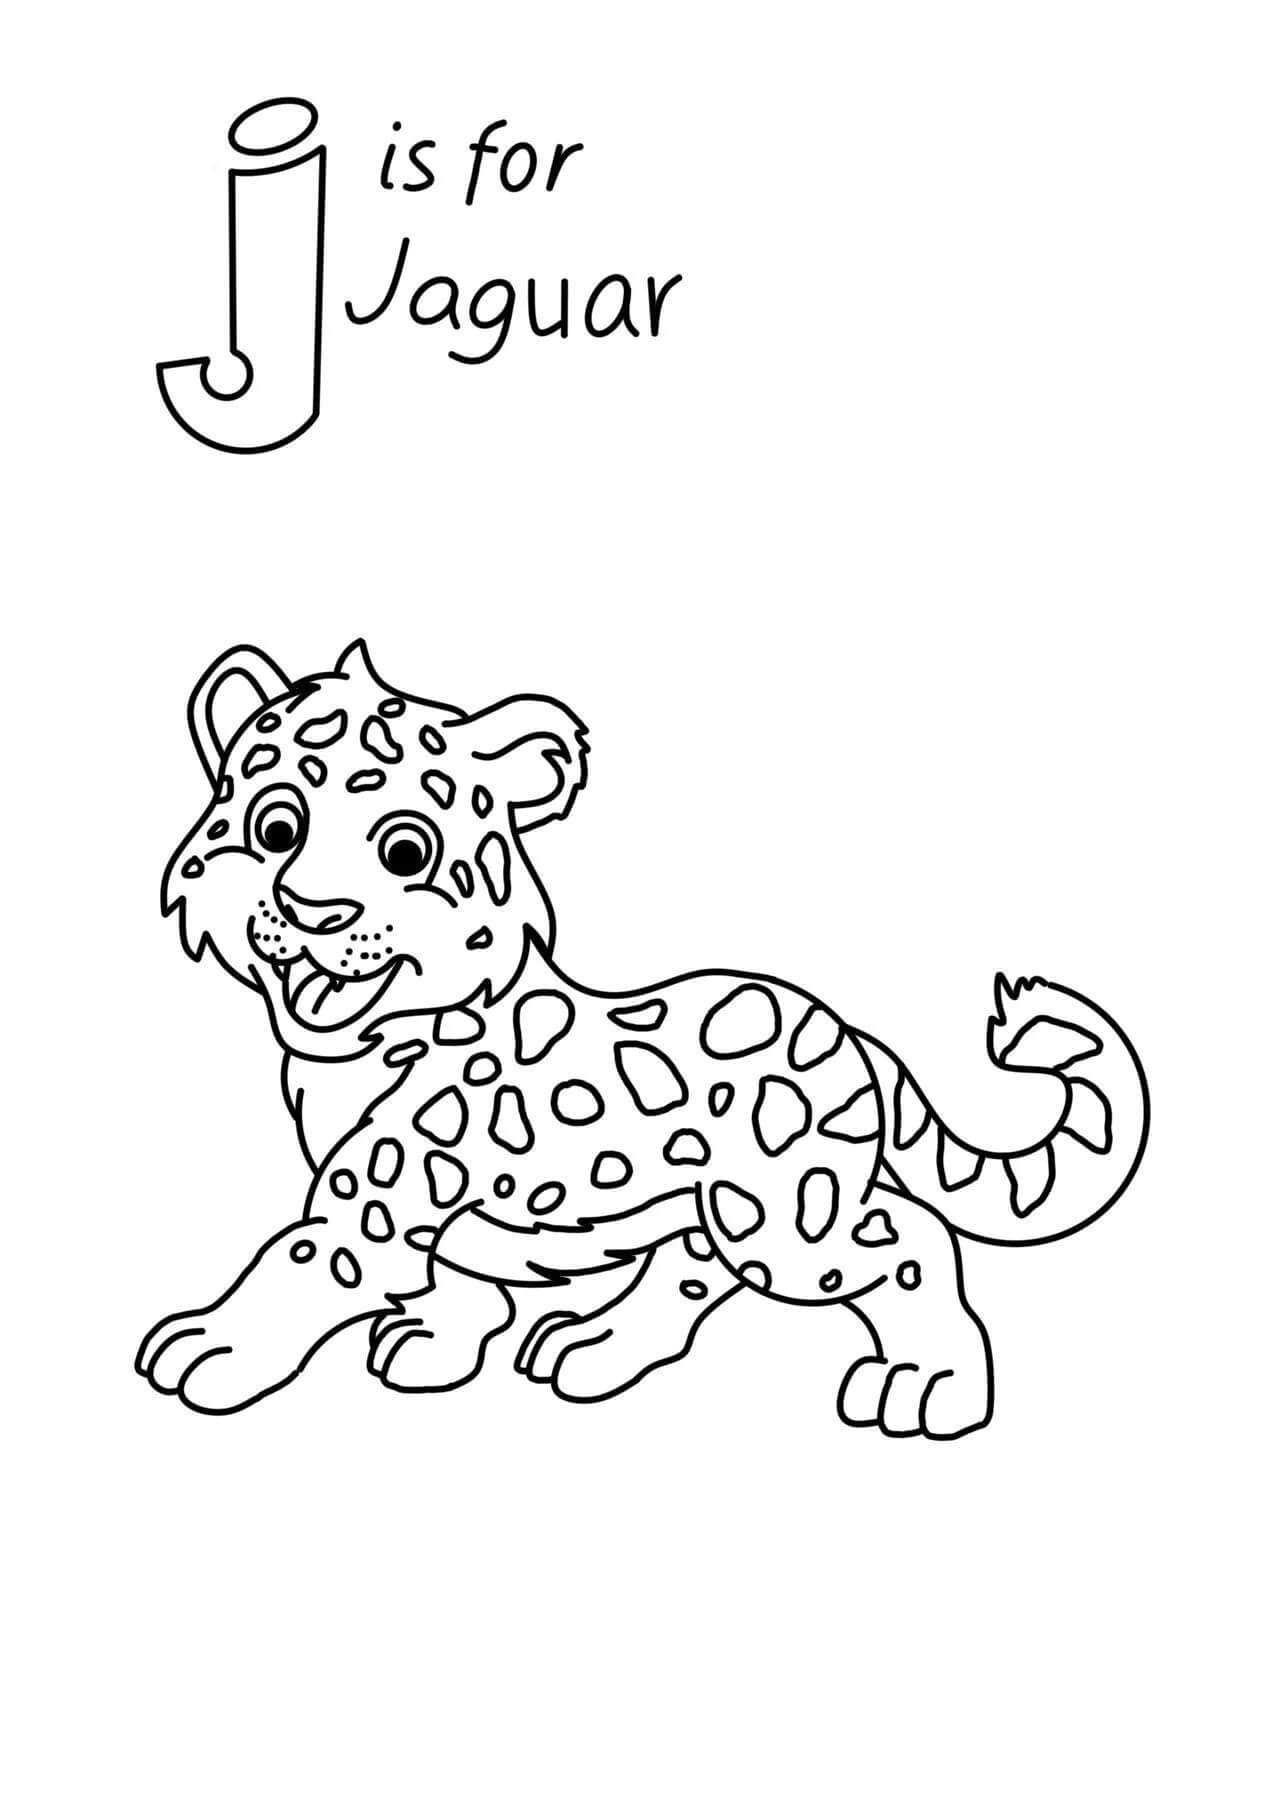 J É Para Jaguar para colorir